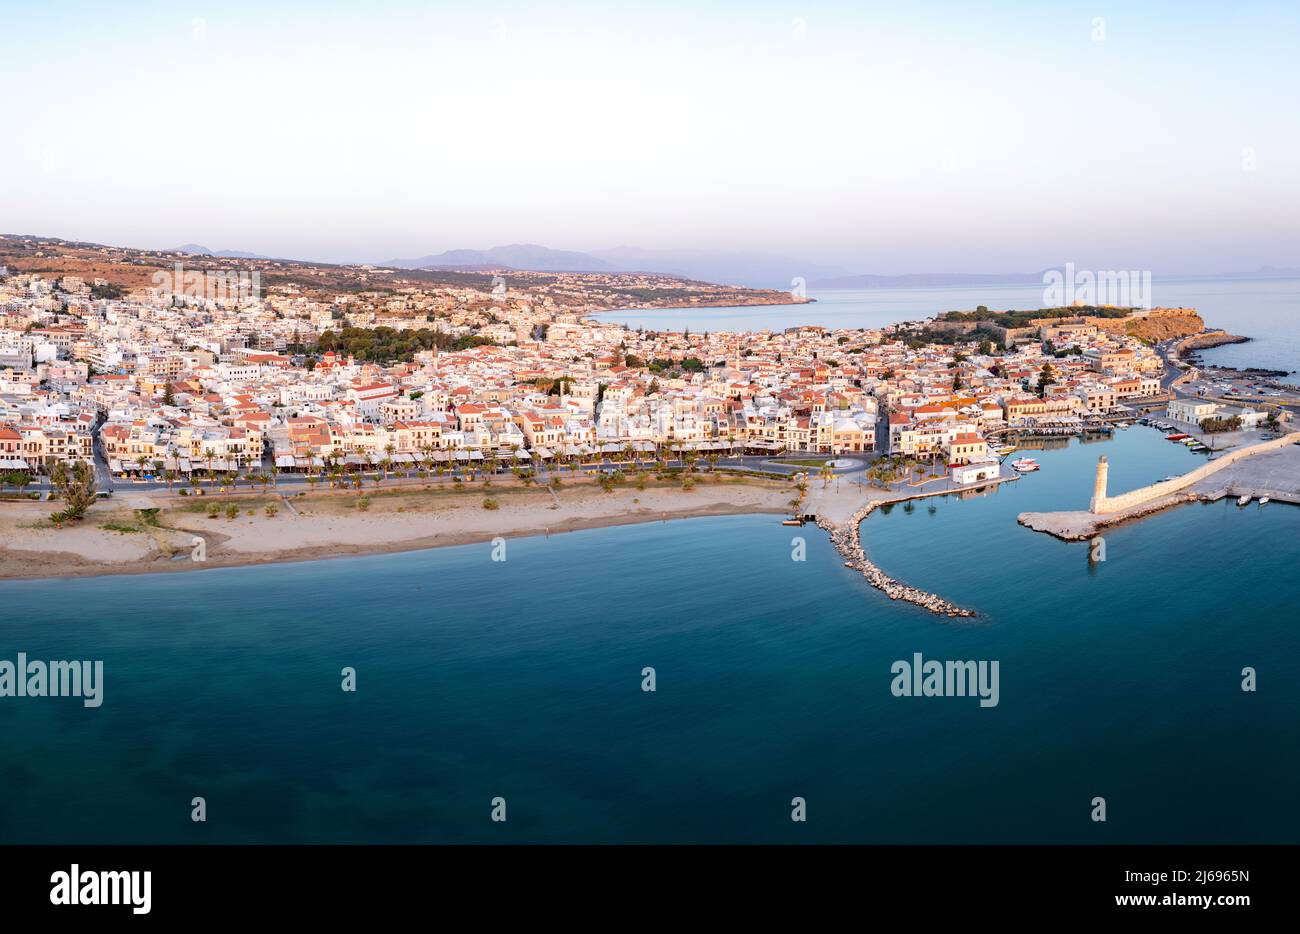 Vista panoramica aerea del vecchio porto veneziano e della città medievale di Rethymno all'alba, Creta isola, Isole Greche, Grecia, Europa Foto Stock